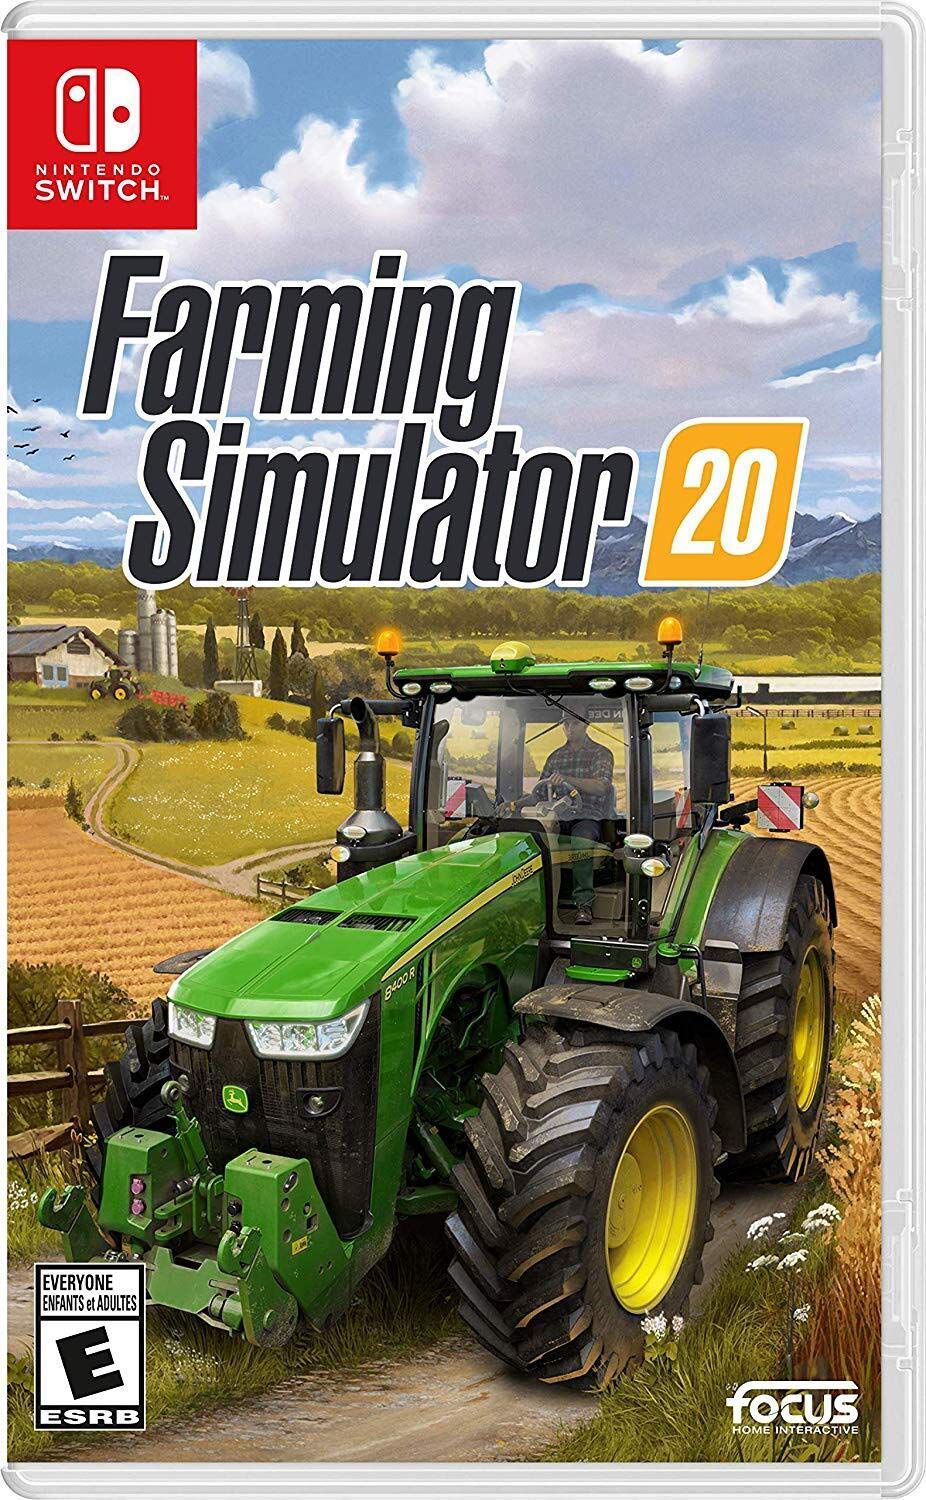 ELE COMPROU UM DOS MAIORES TRATOR DO JOGO, Farming Simulator 19